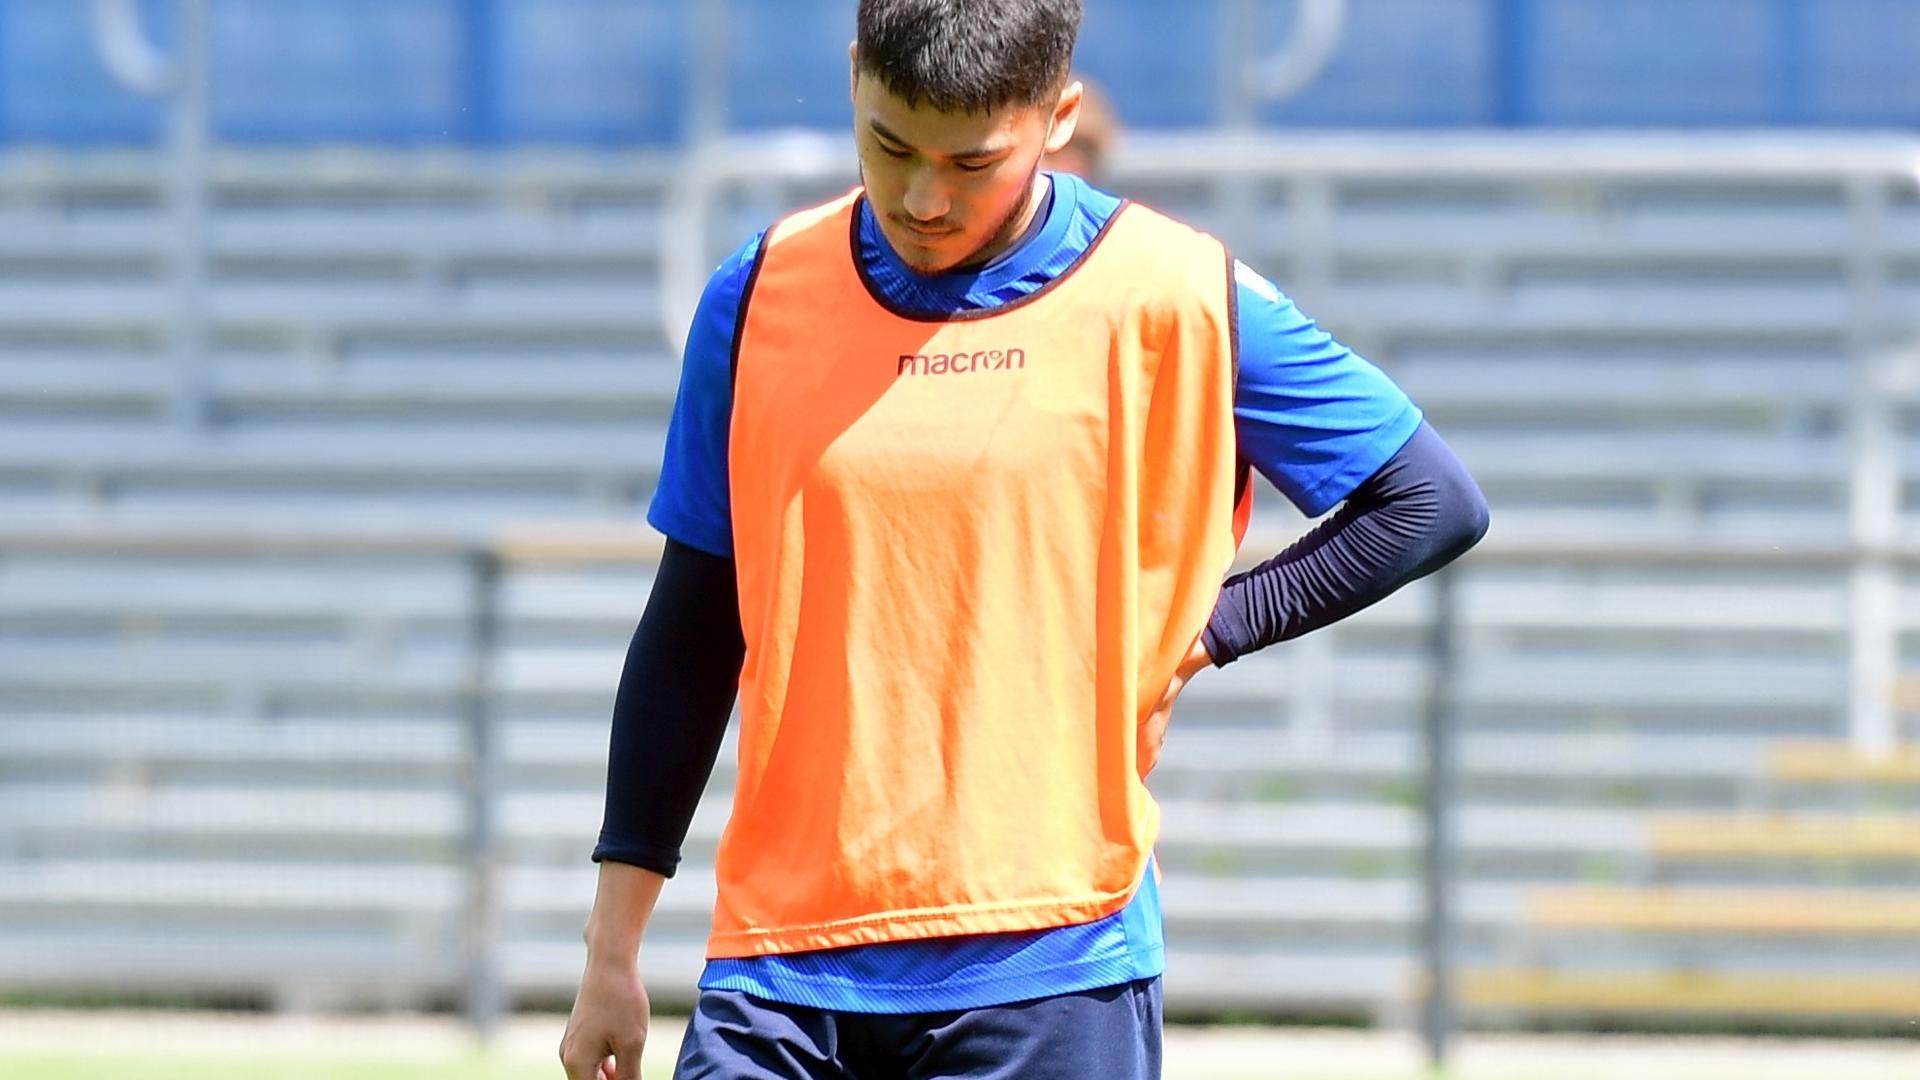 Bei Belastung schmerzt es: Der südkoreanische Fußballprofi Kyoung-Rok Choi klagt seit Monaten über diffuse Rückenbeschwerden und verpasste beim Karlsruher SC die komplette Vorbereitung. 